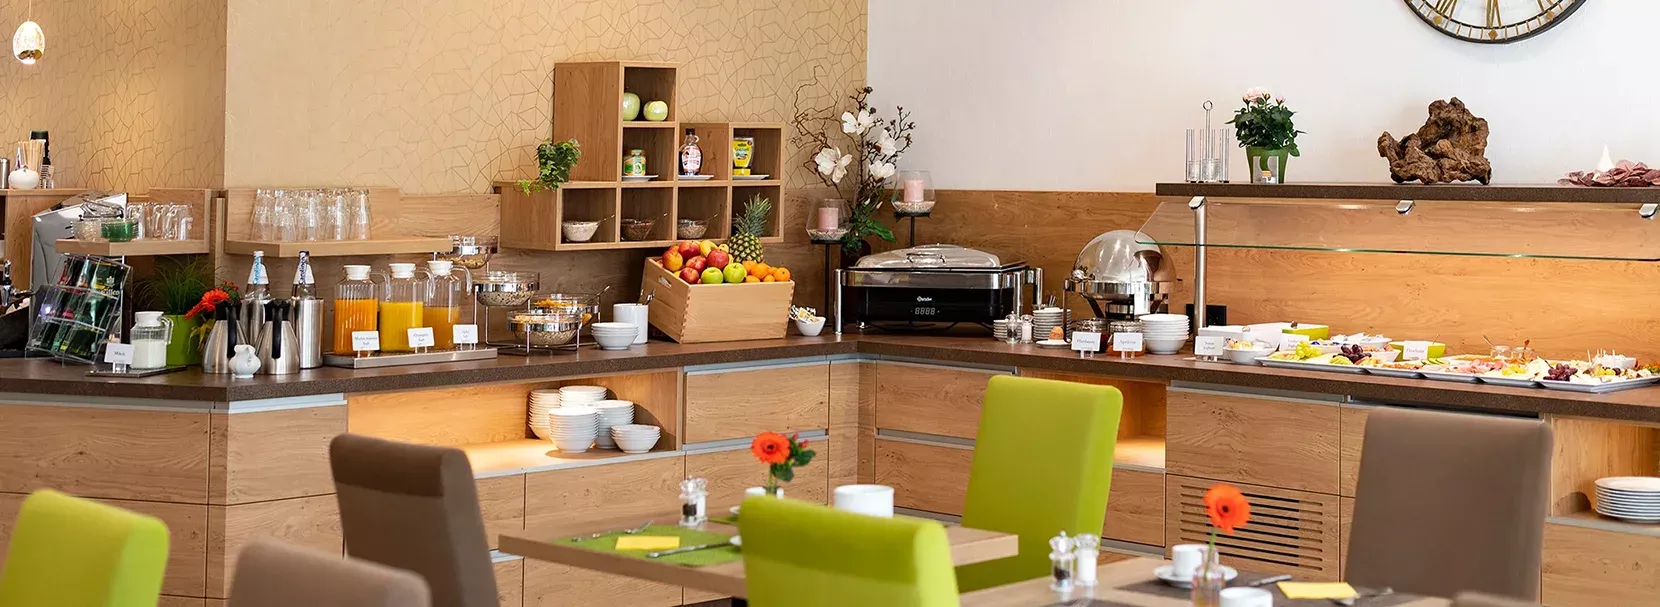 Moderner Frühstücksraum im Landhotel Behre